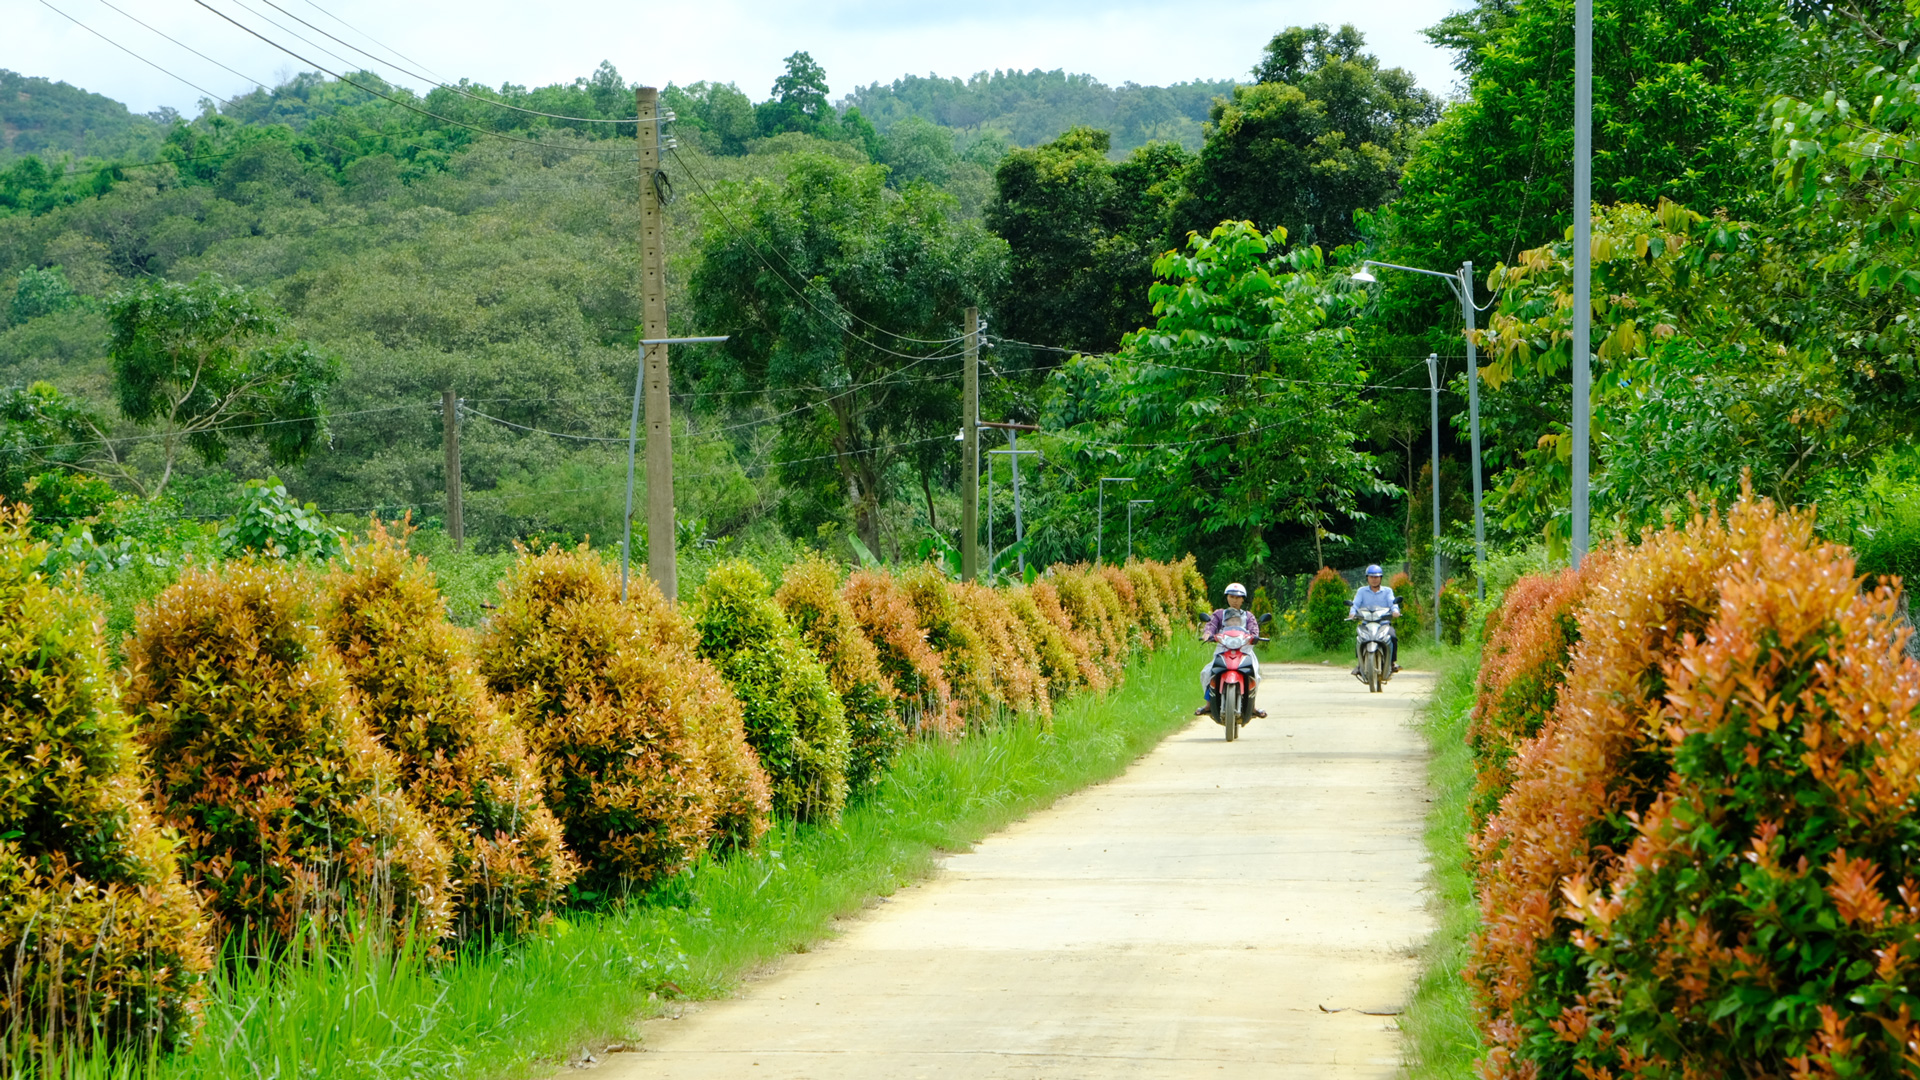 Người dân huyện Cát Tiên chung sức, đồng lòng xây dựng các tuyến đường xanh, sạch, đẹp